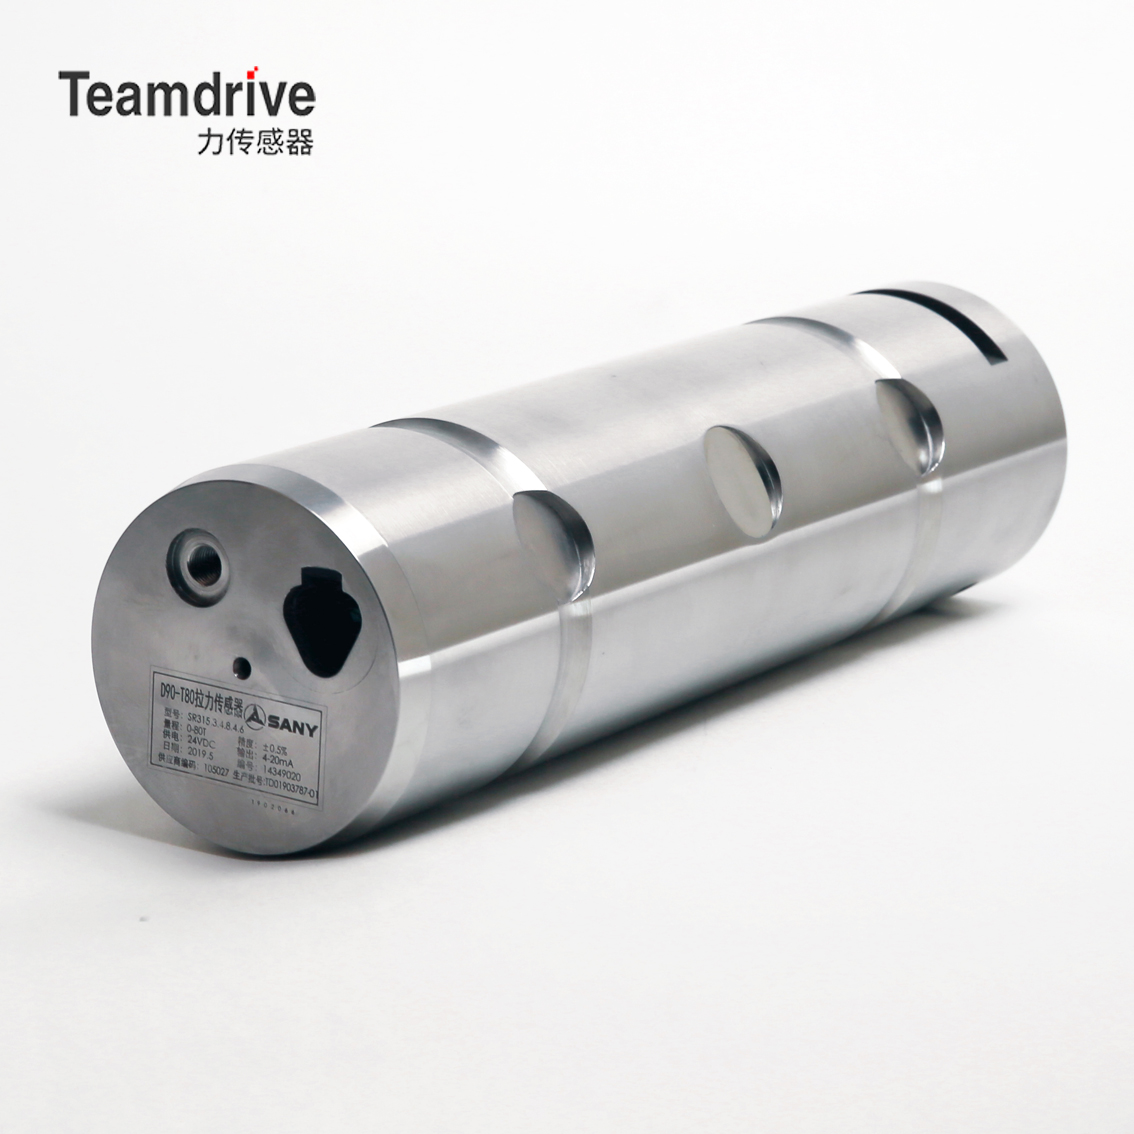 供應旋挖鑽機應用的TeamdriveTDP型銷軸式測力傳感器